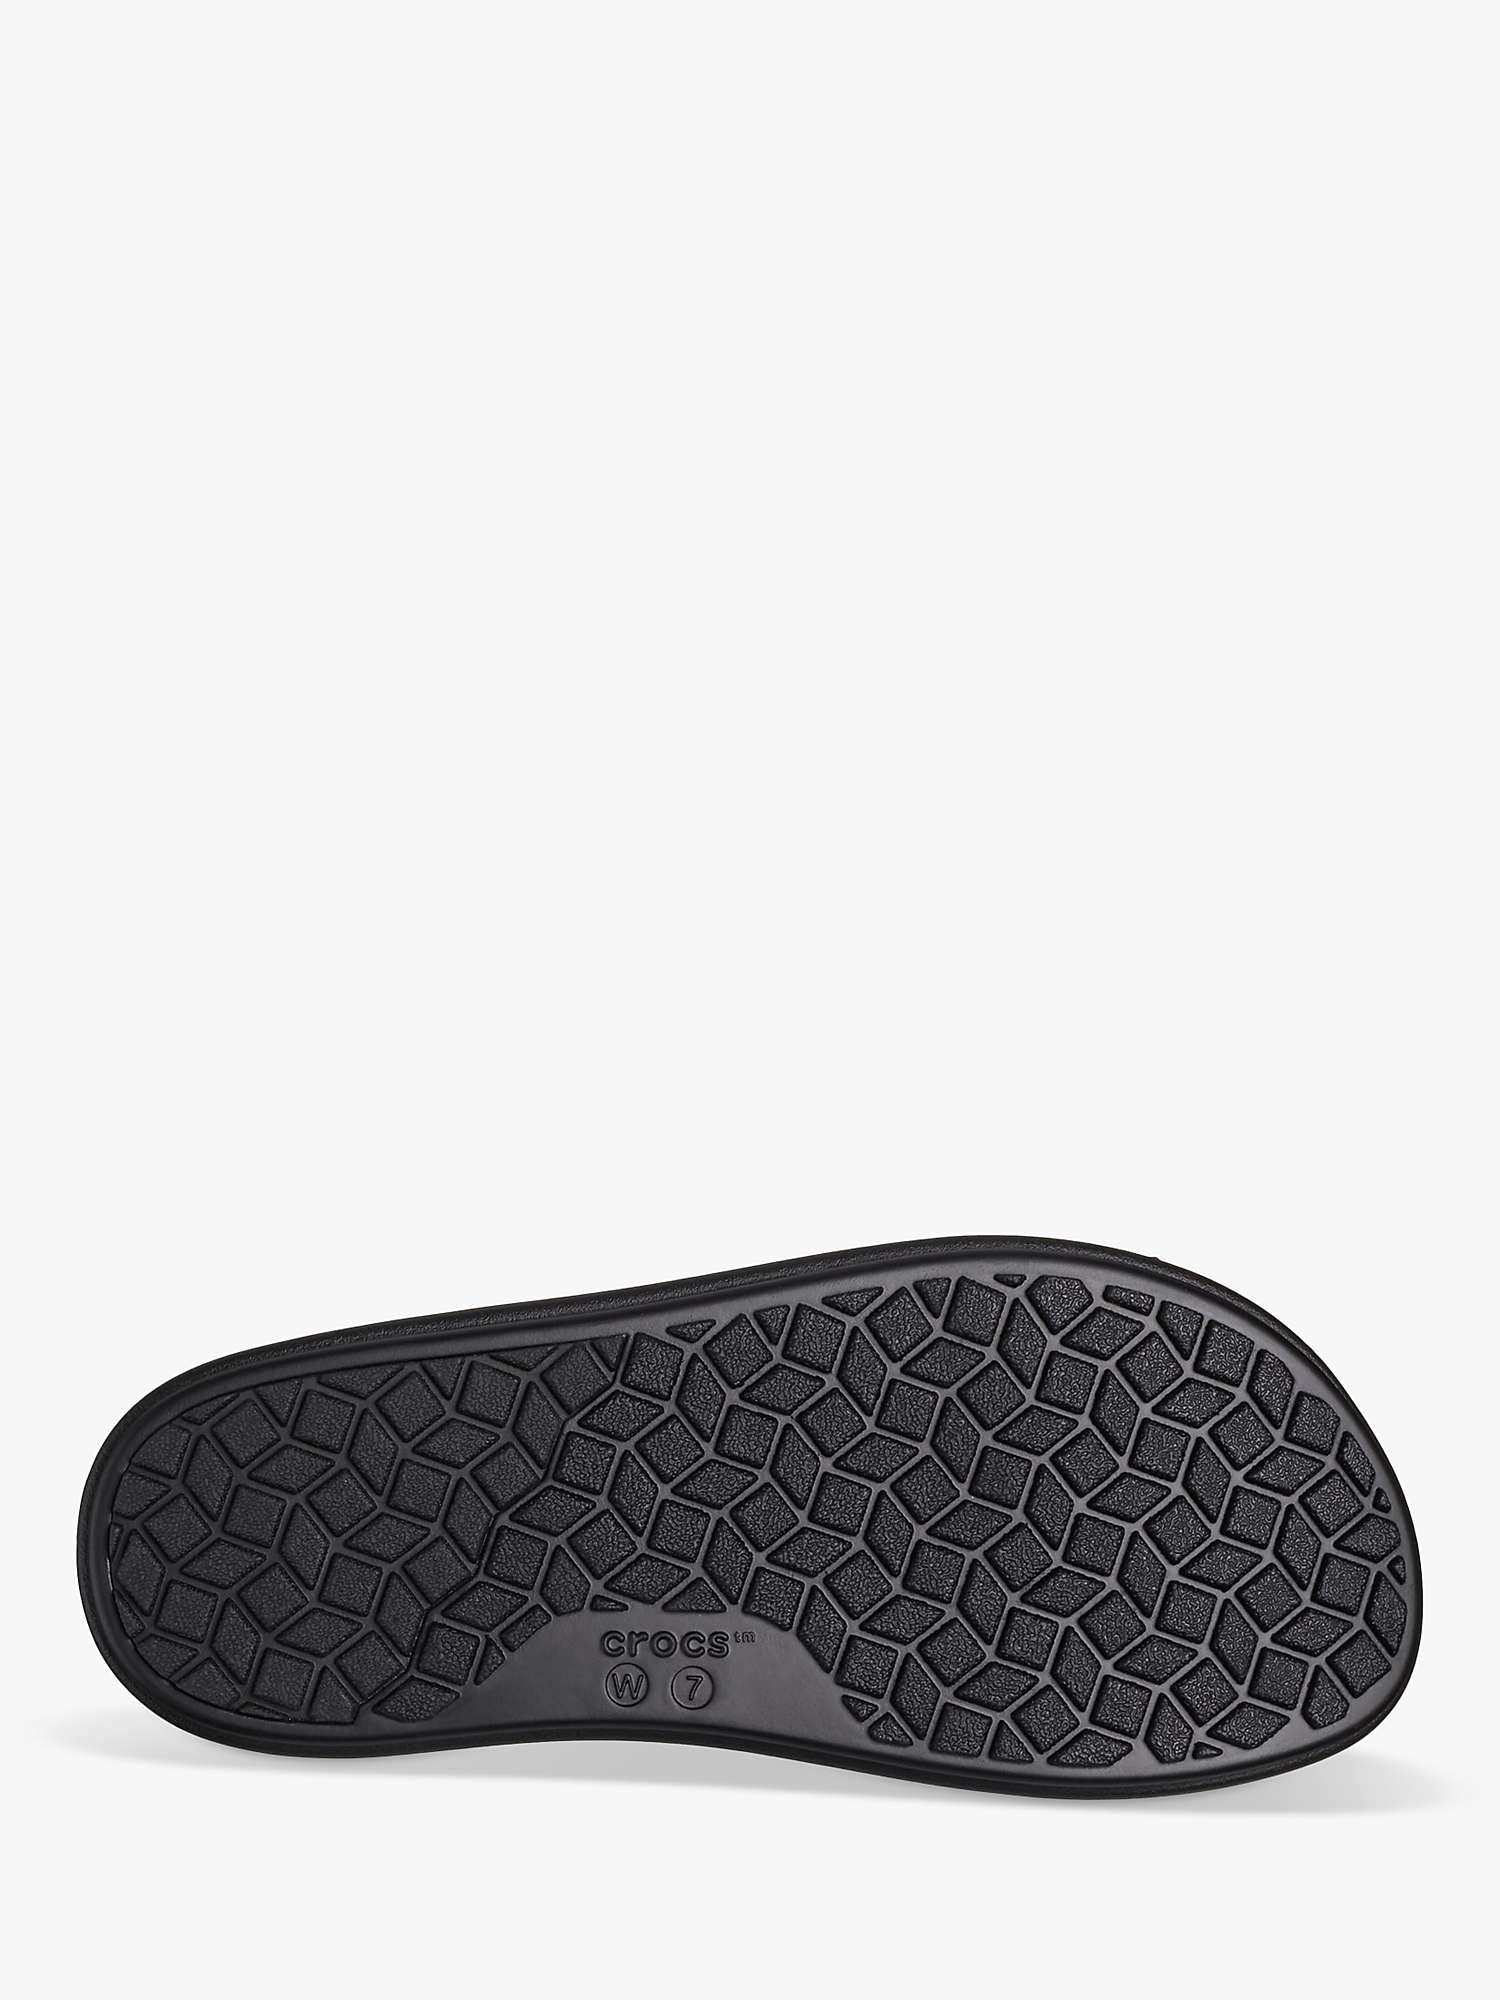 Buy Crocs Brooklyn Luxe Sandal, Black Online at johnlewis.com